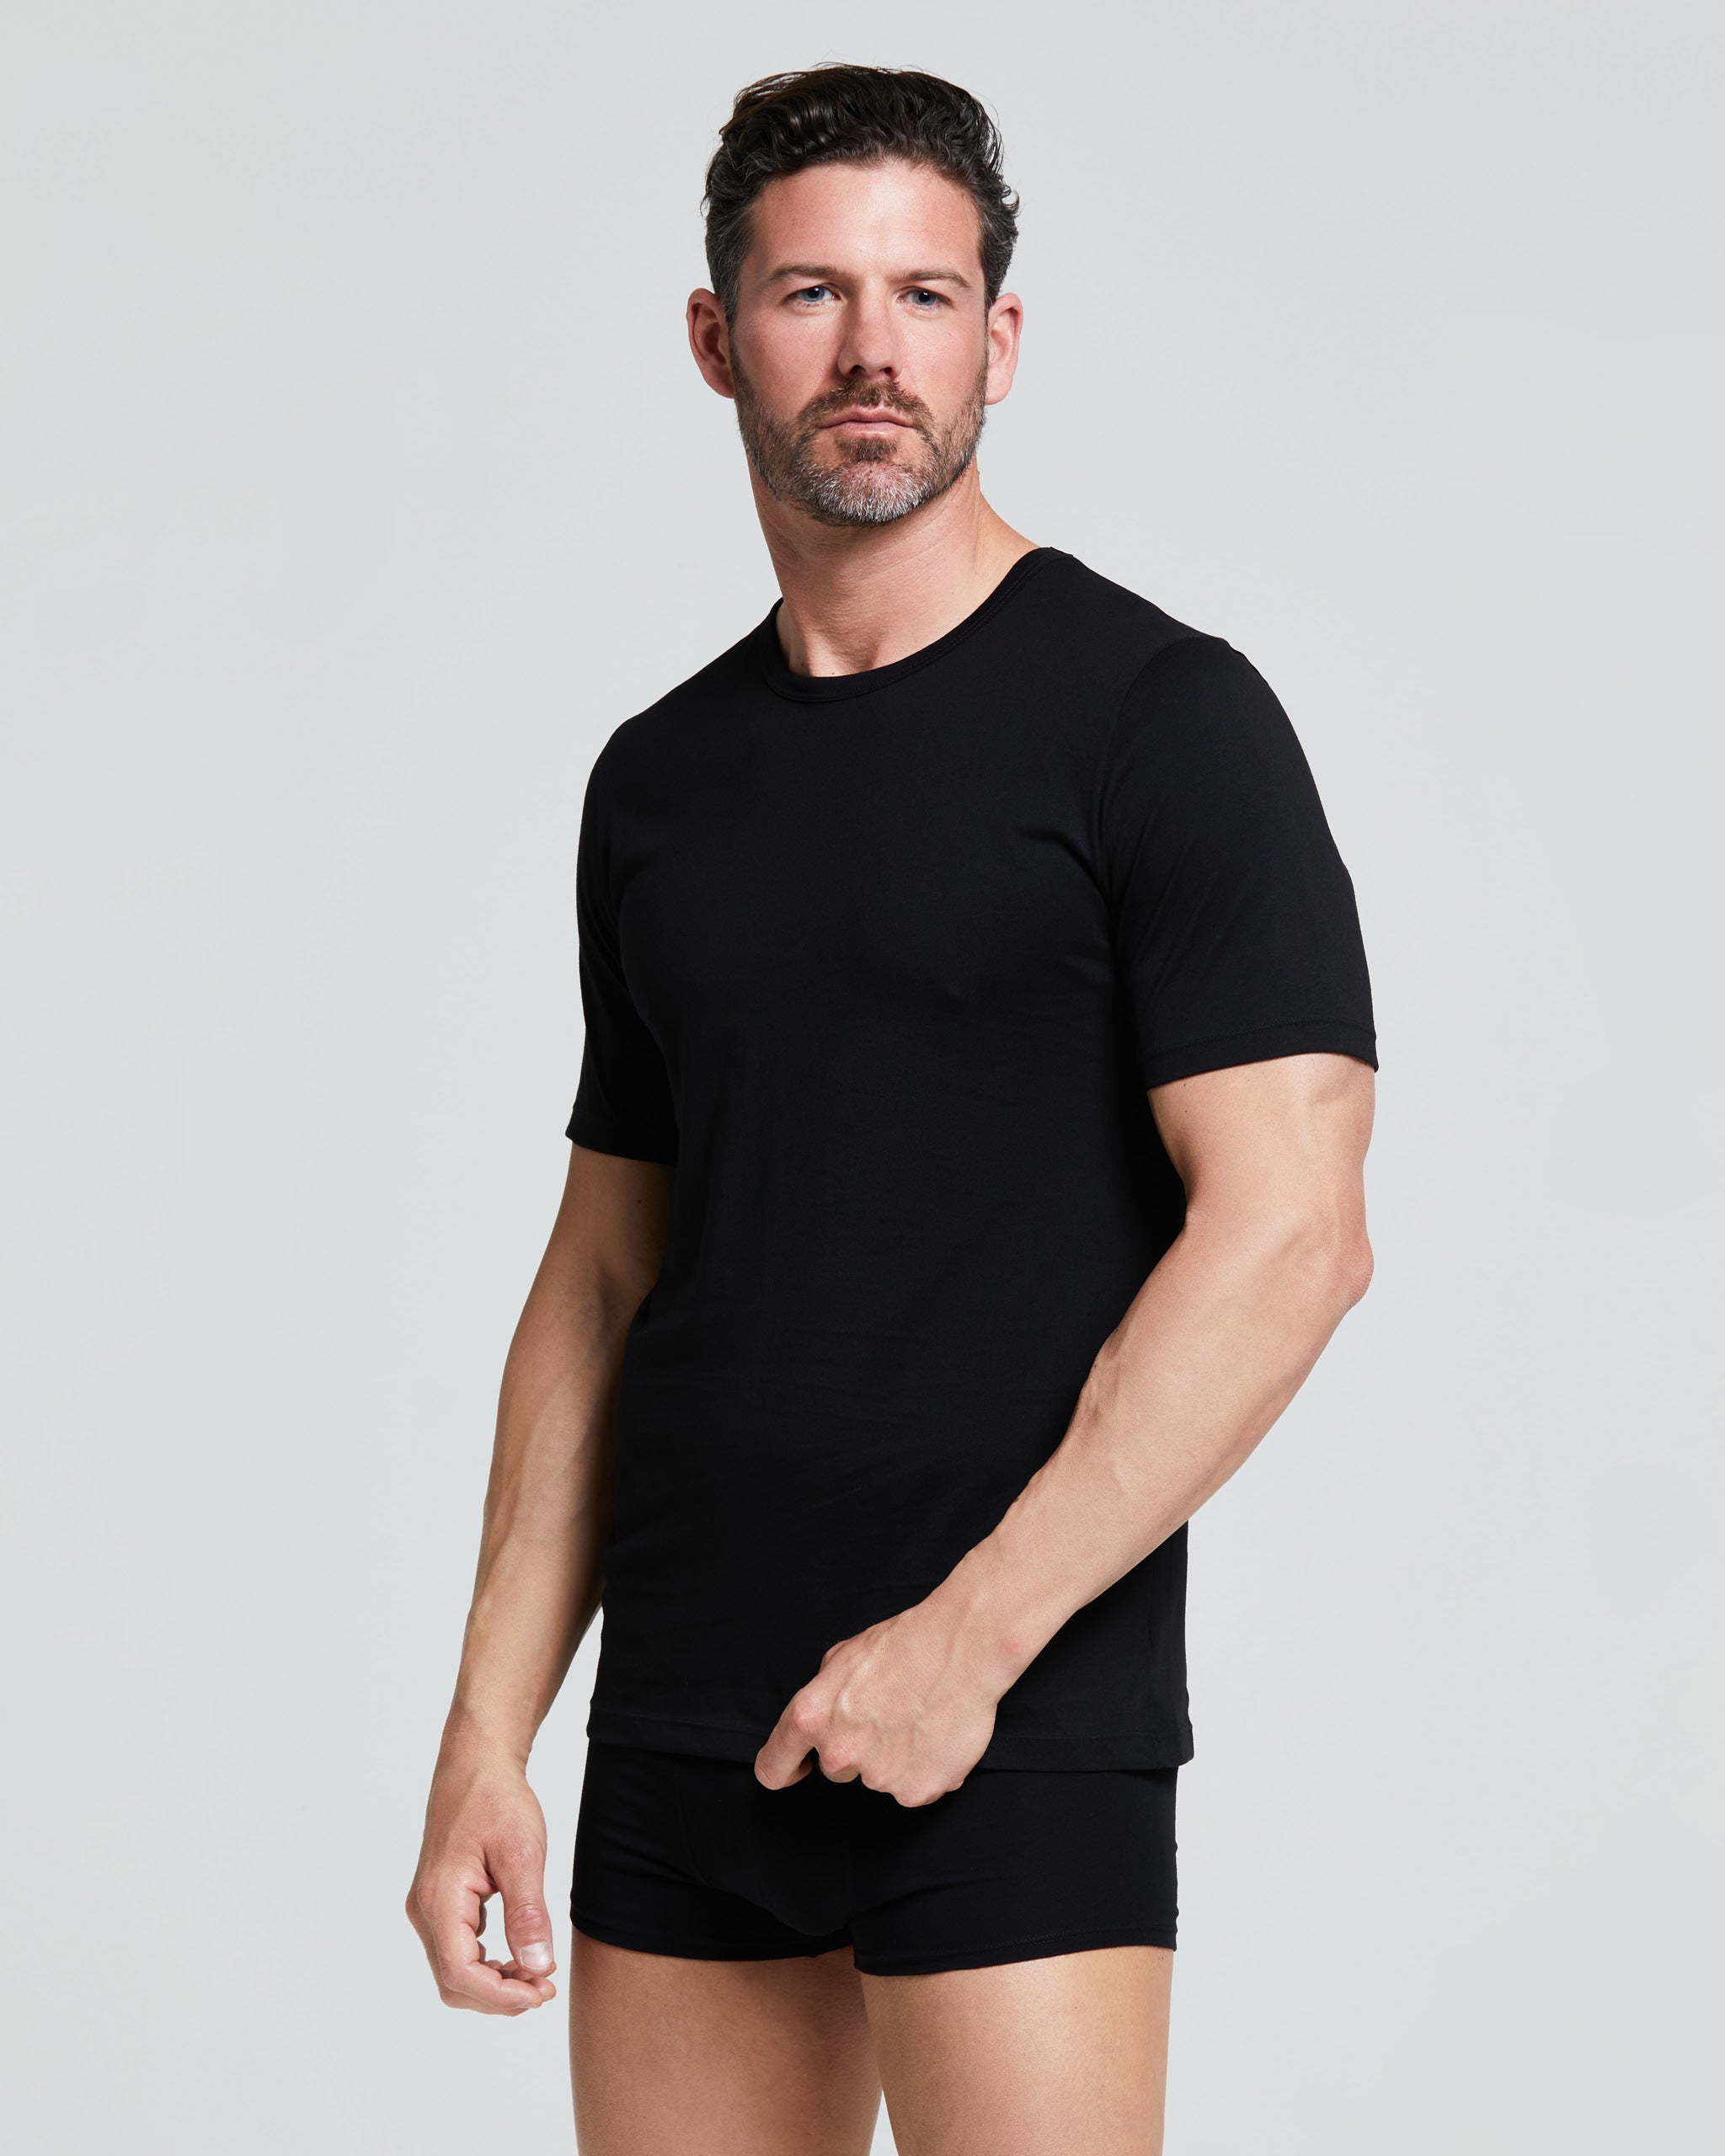 T-Shirt girocollo in cotone organico Cotton Planet vestibilità comfort